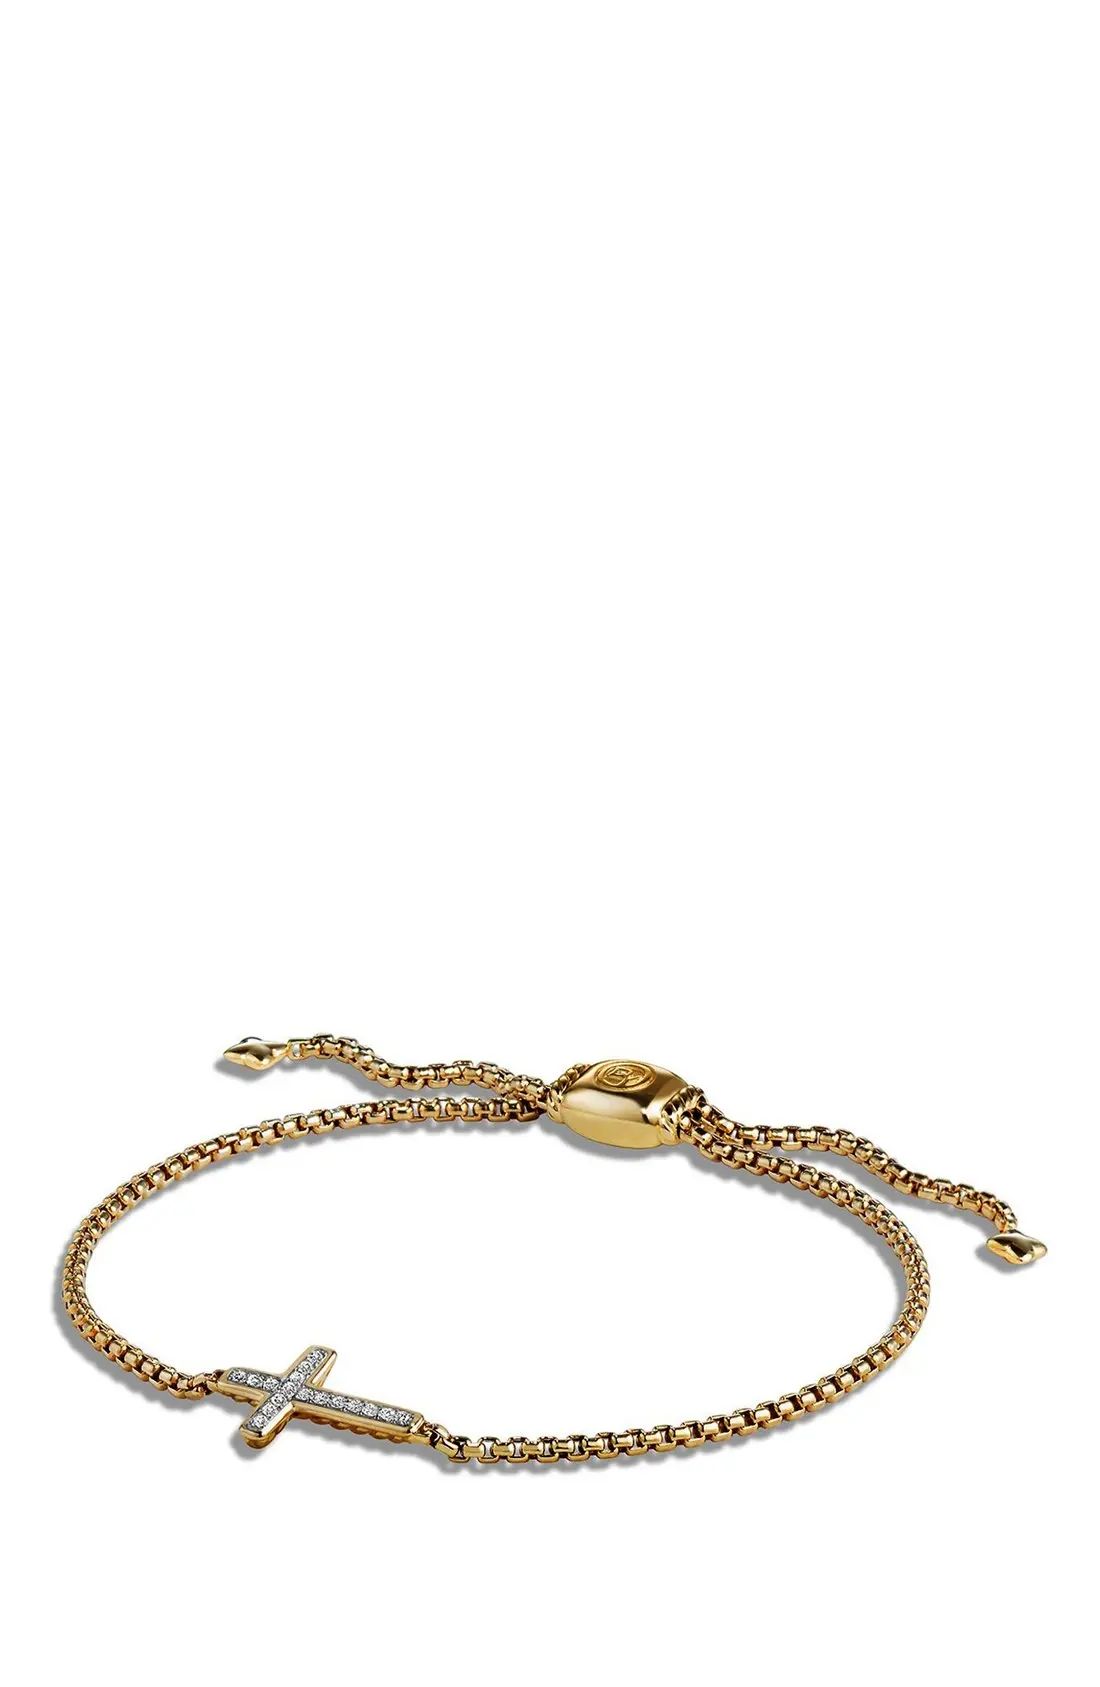 David Yurman 'Petite Pavé' Cross Bracelet with Diamonds in 18K Gold | Nordstrom